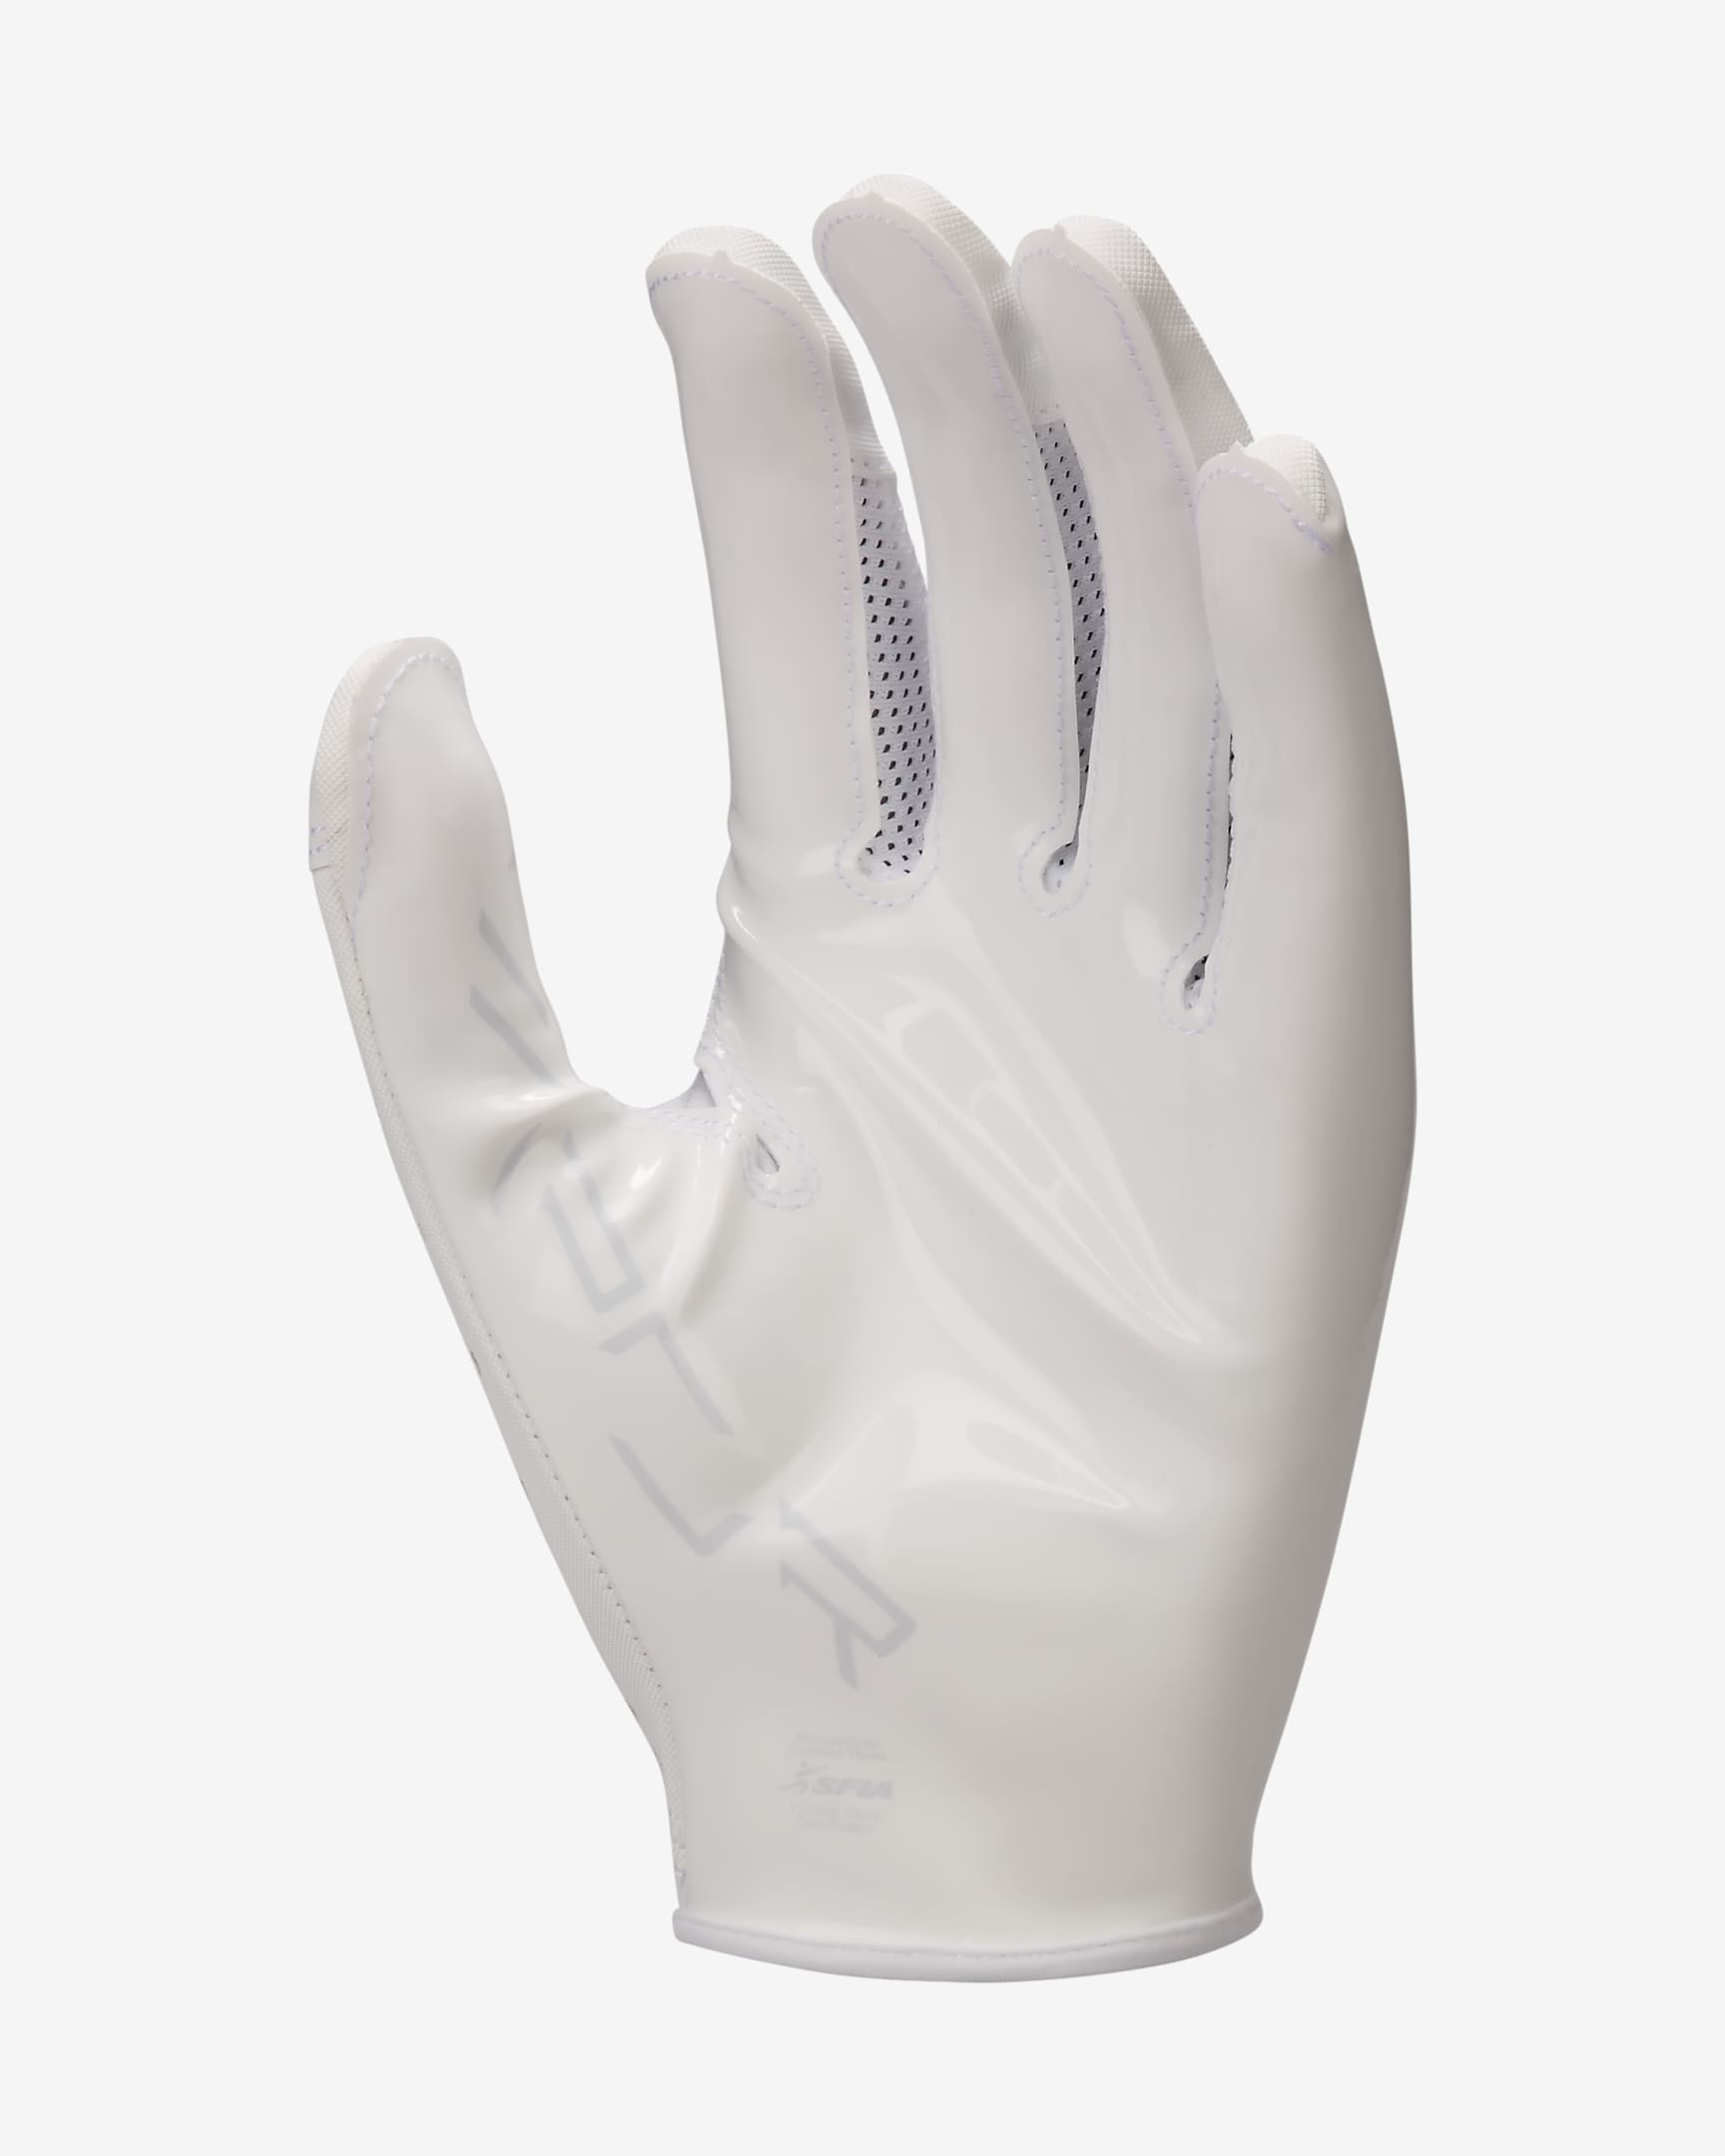 Nike Vapor Jet 8.0 Football Gloves (1 Pair) - White